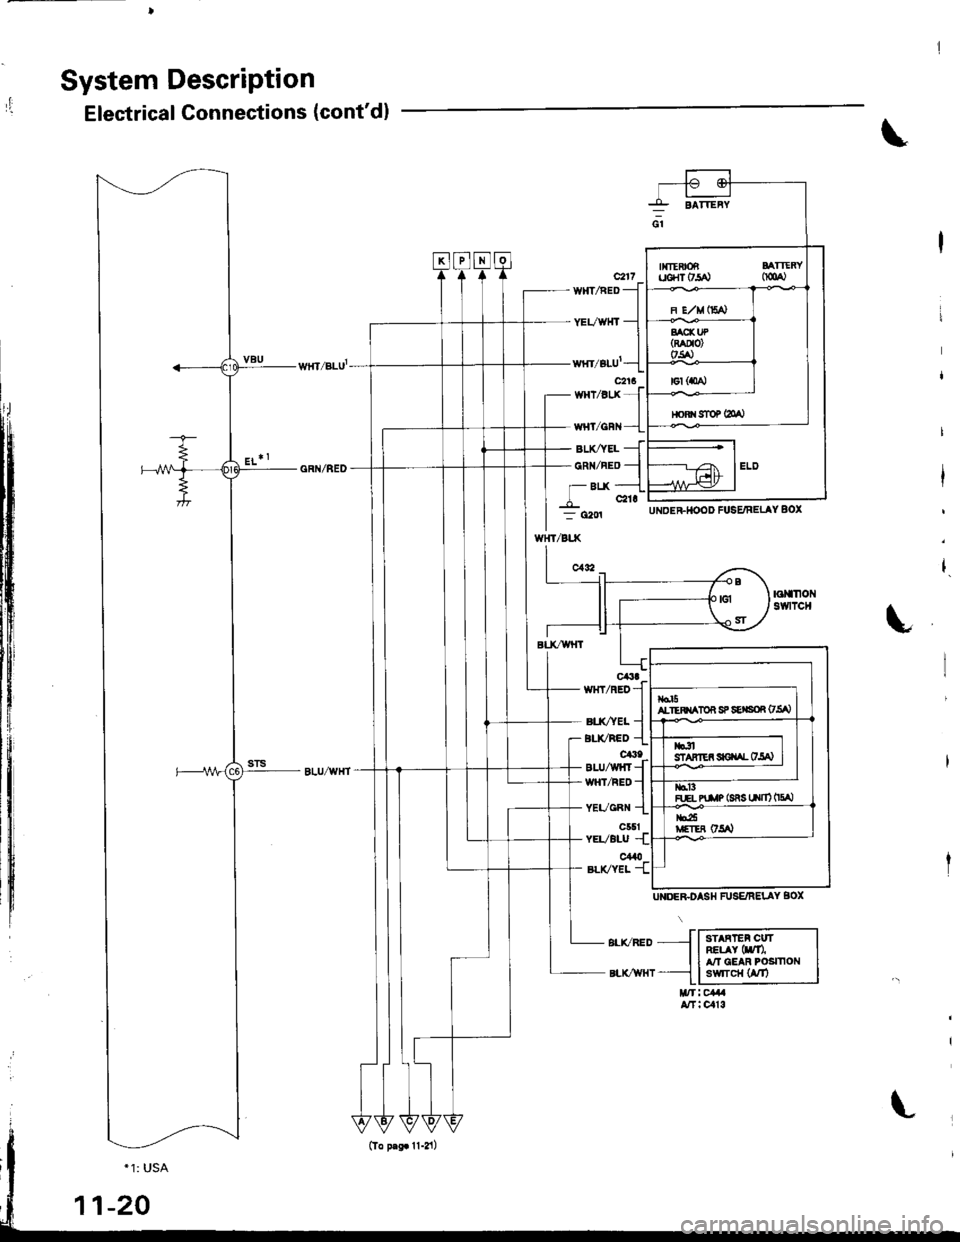 HONDA INTEGRA 1998 4.G Workshop Manual System DescriPtion
,Electrical Connections (contdl
\
c217WNT/RED -
YEVWTTT -
wrfi/BLU-
c2t6wHt/BtJ( -
- BIJ(AEL -
- CRN/RED -
- Btx -
_L c21r
/Btx
UNDEFHOOD FUSE/RELAY 8OX
w{T
UNOEEDASH FUSE/RELAY 